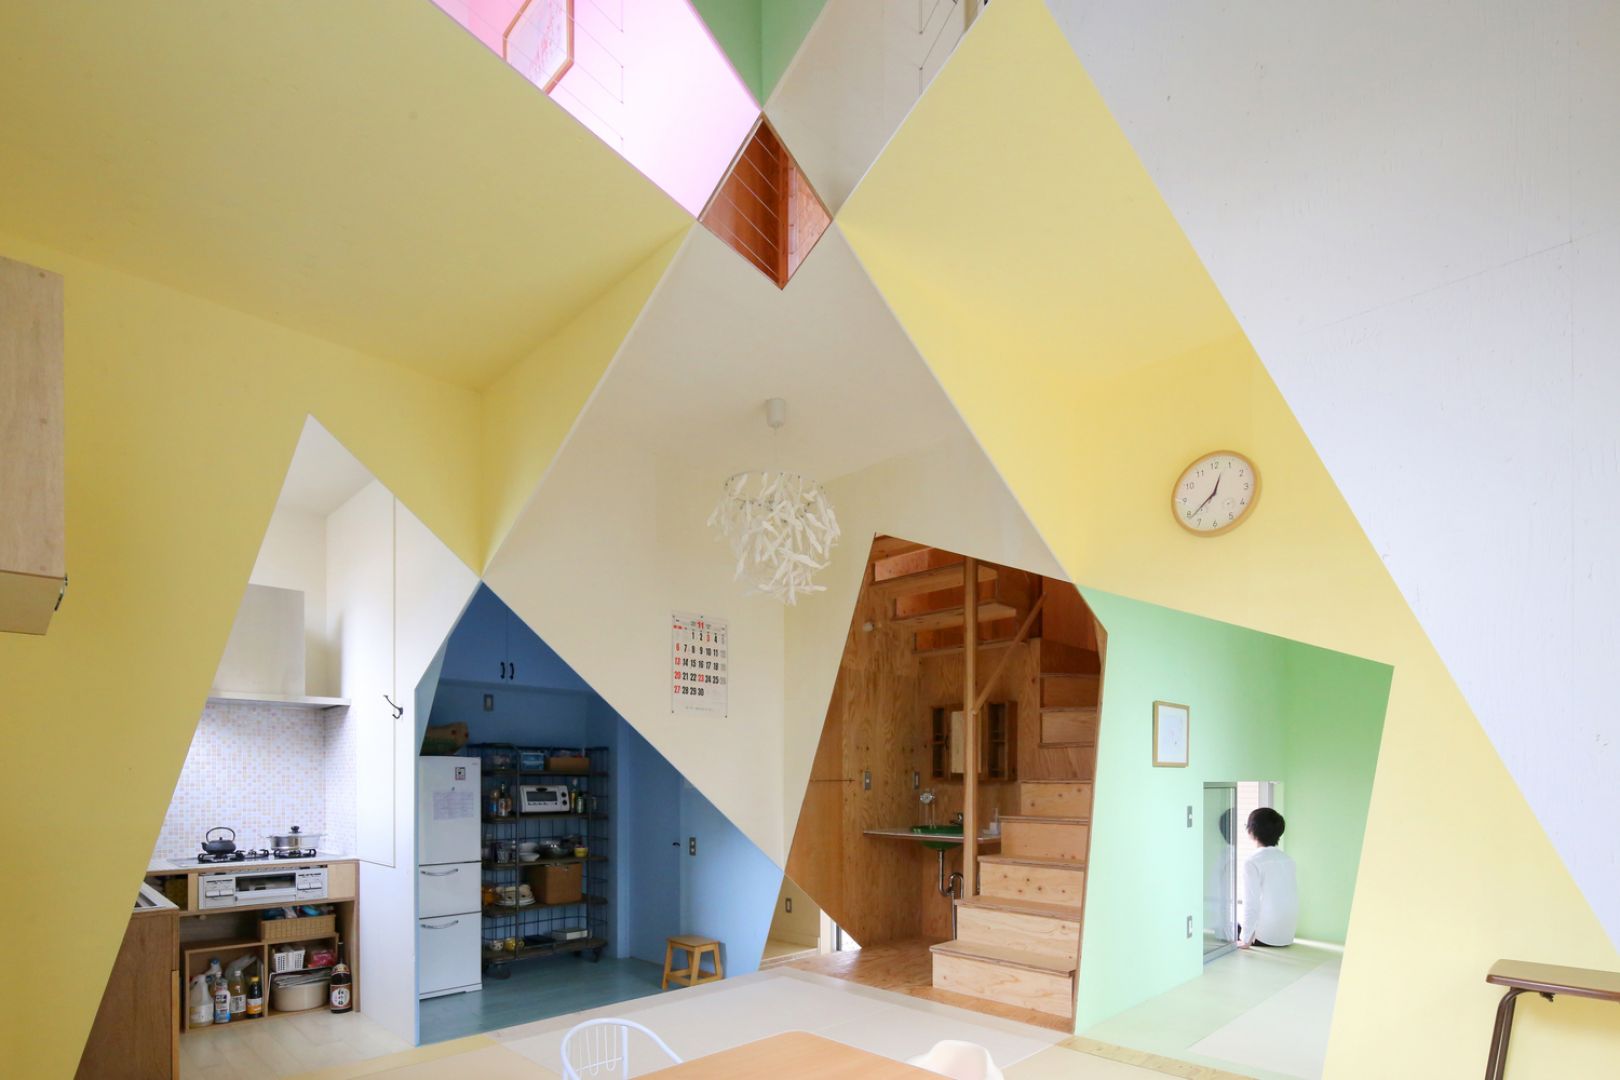 Architekt postanowił użyć aż 4 różnych kolorów aby podkreślić różnicę pomiędzy poszczególnymi kondygnacjami pomieszczeń. W sumie w tym domu wykorzystano 7 różnych kolorów na ścianach i sufitach, aby wytyczyć granicę między każdym pomieszczeniem. Fot. Kazuyasu Kochi